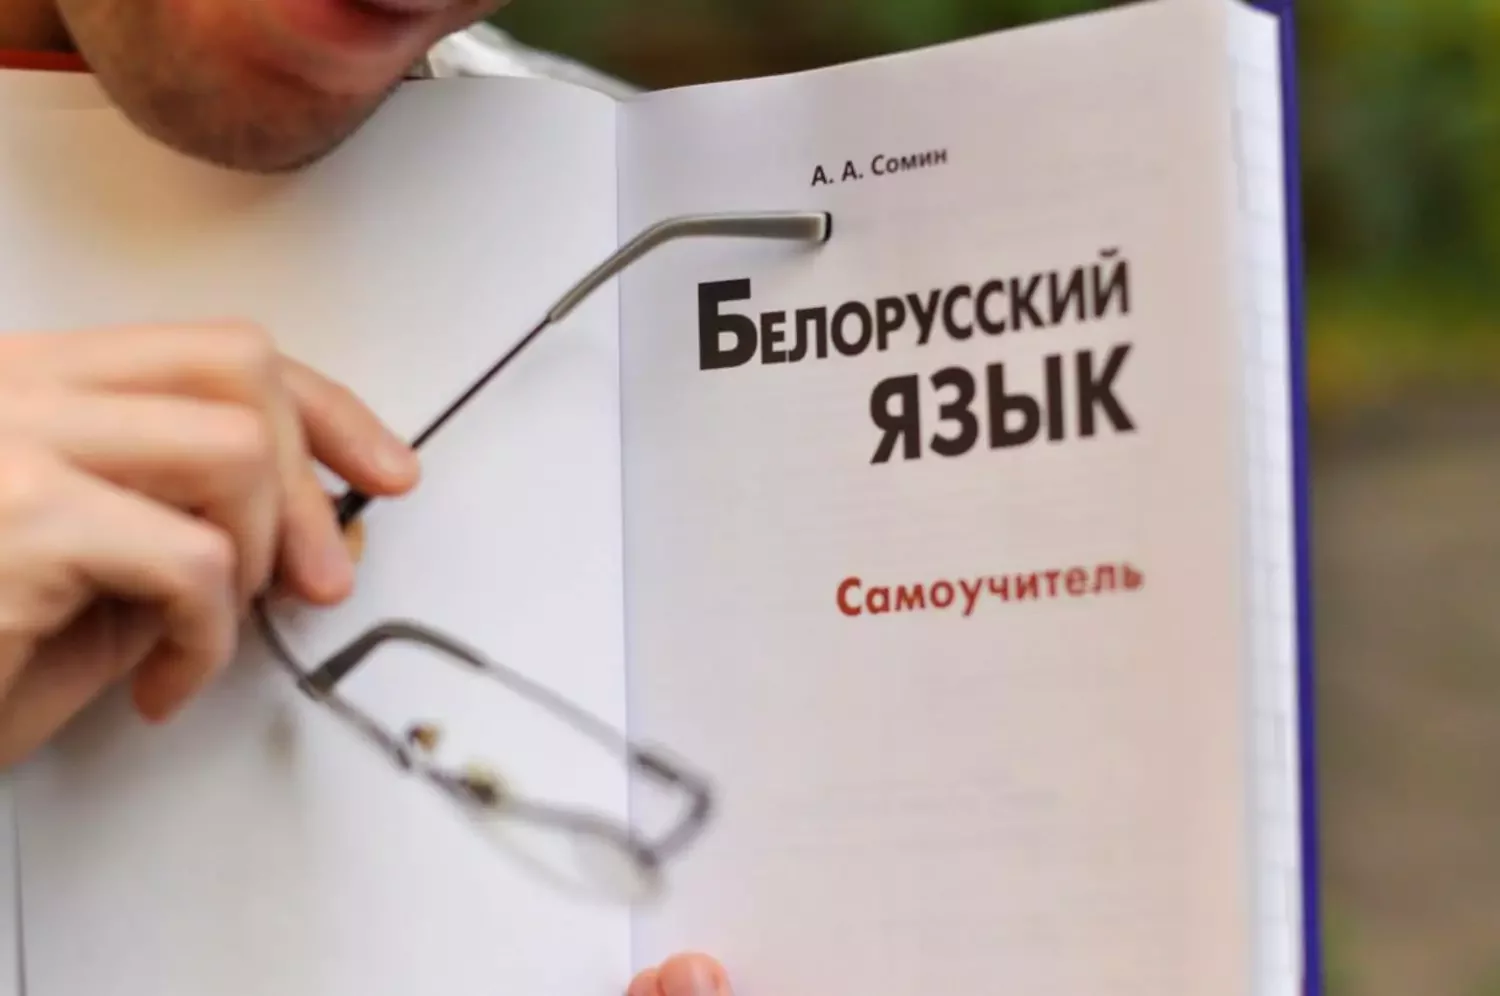 Учебник белорусской мовы